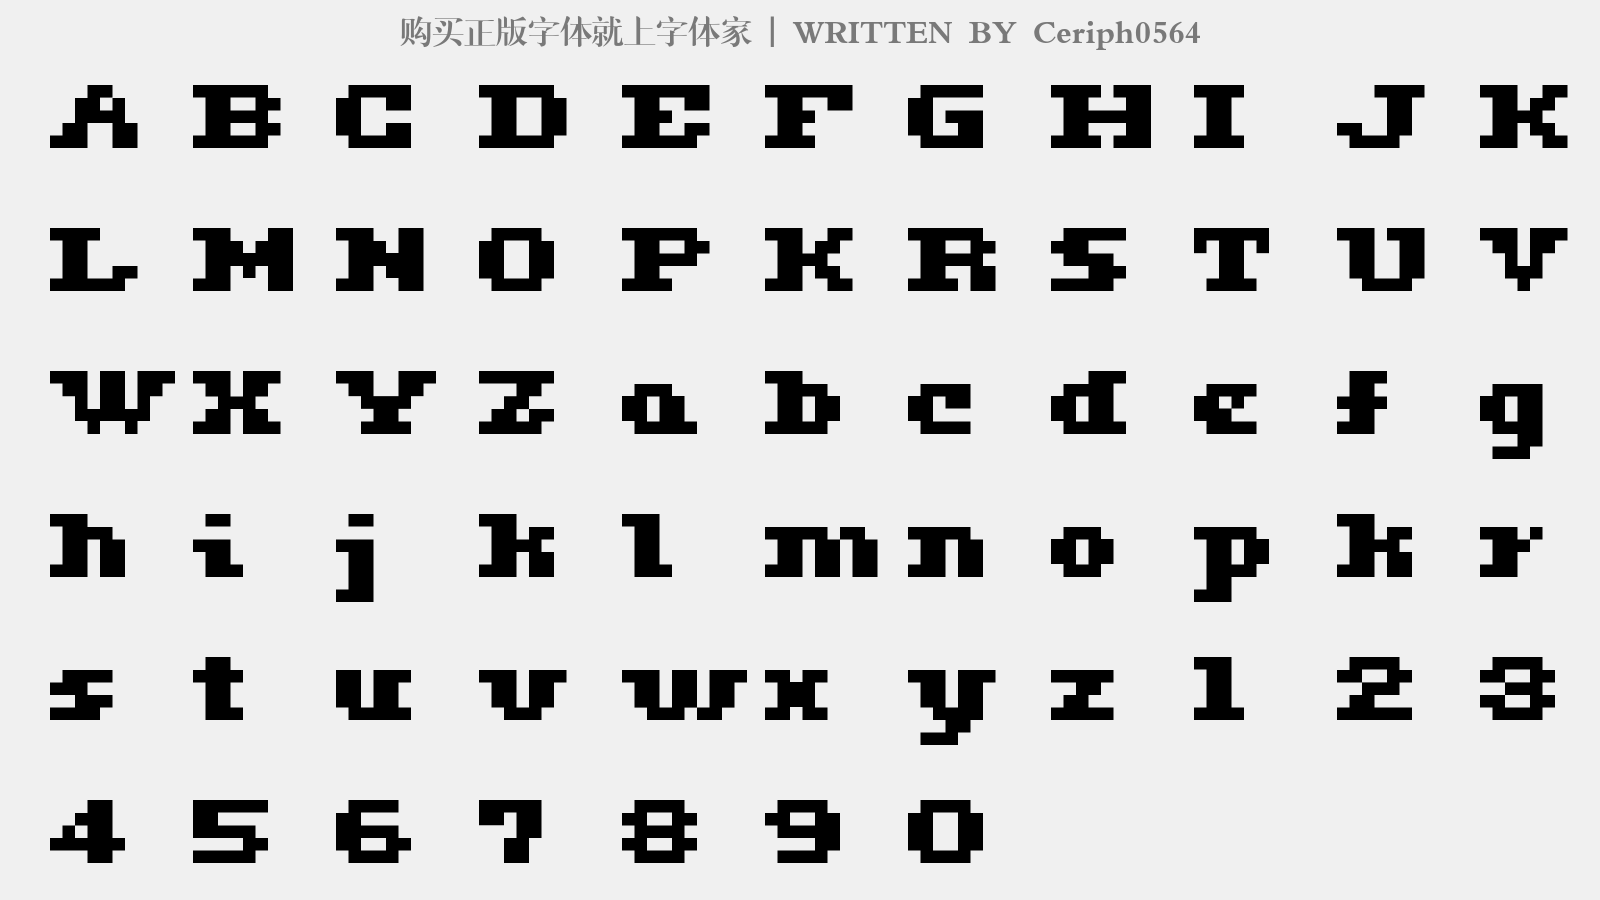 Ceriph0564 - 大写字母/小写字母/数字